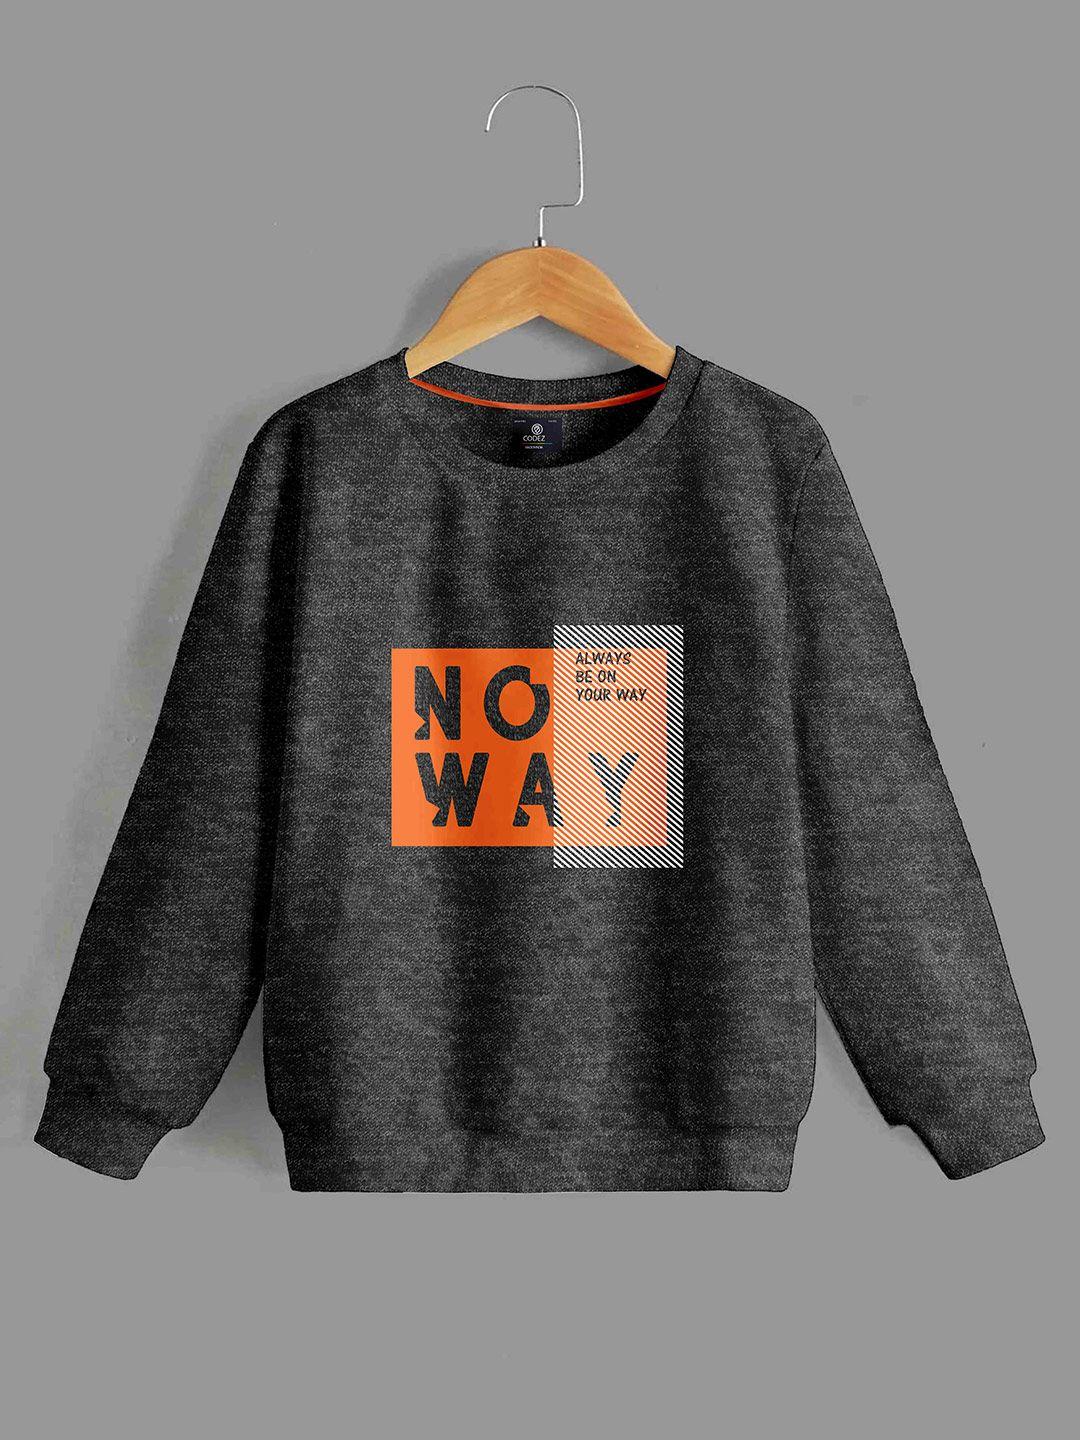 baesd-boys-typographic-printed-fleece-sweatshirt